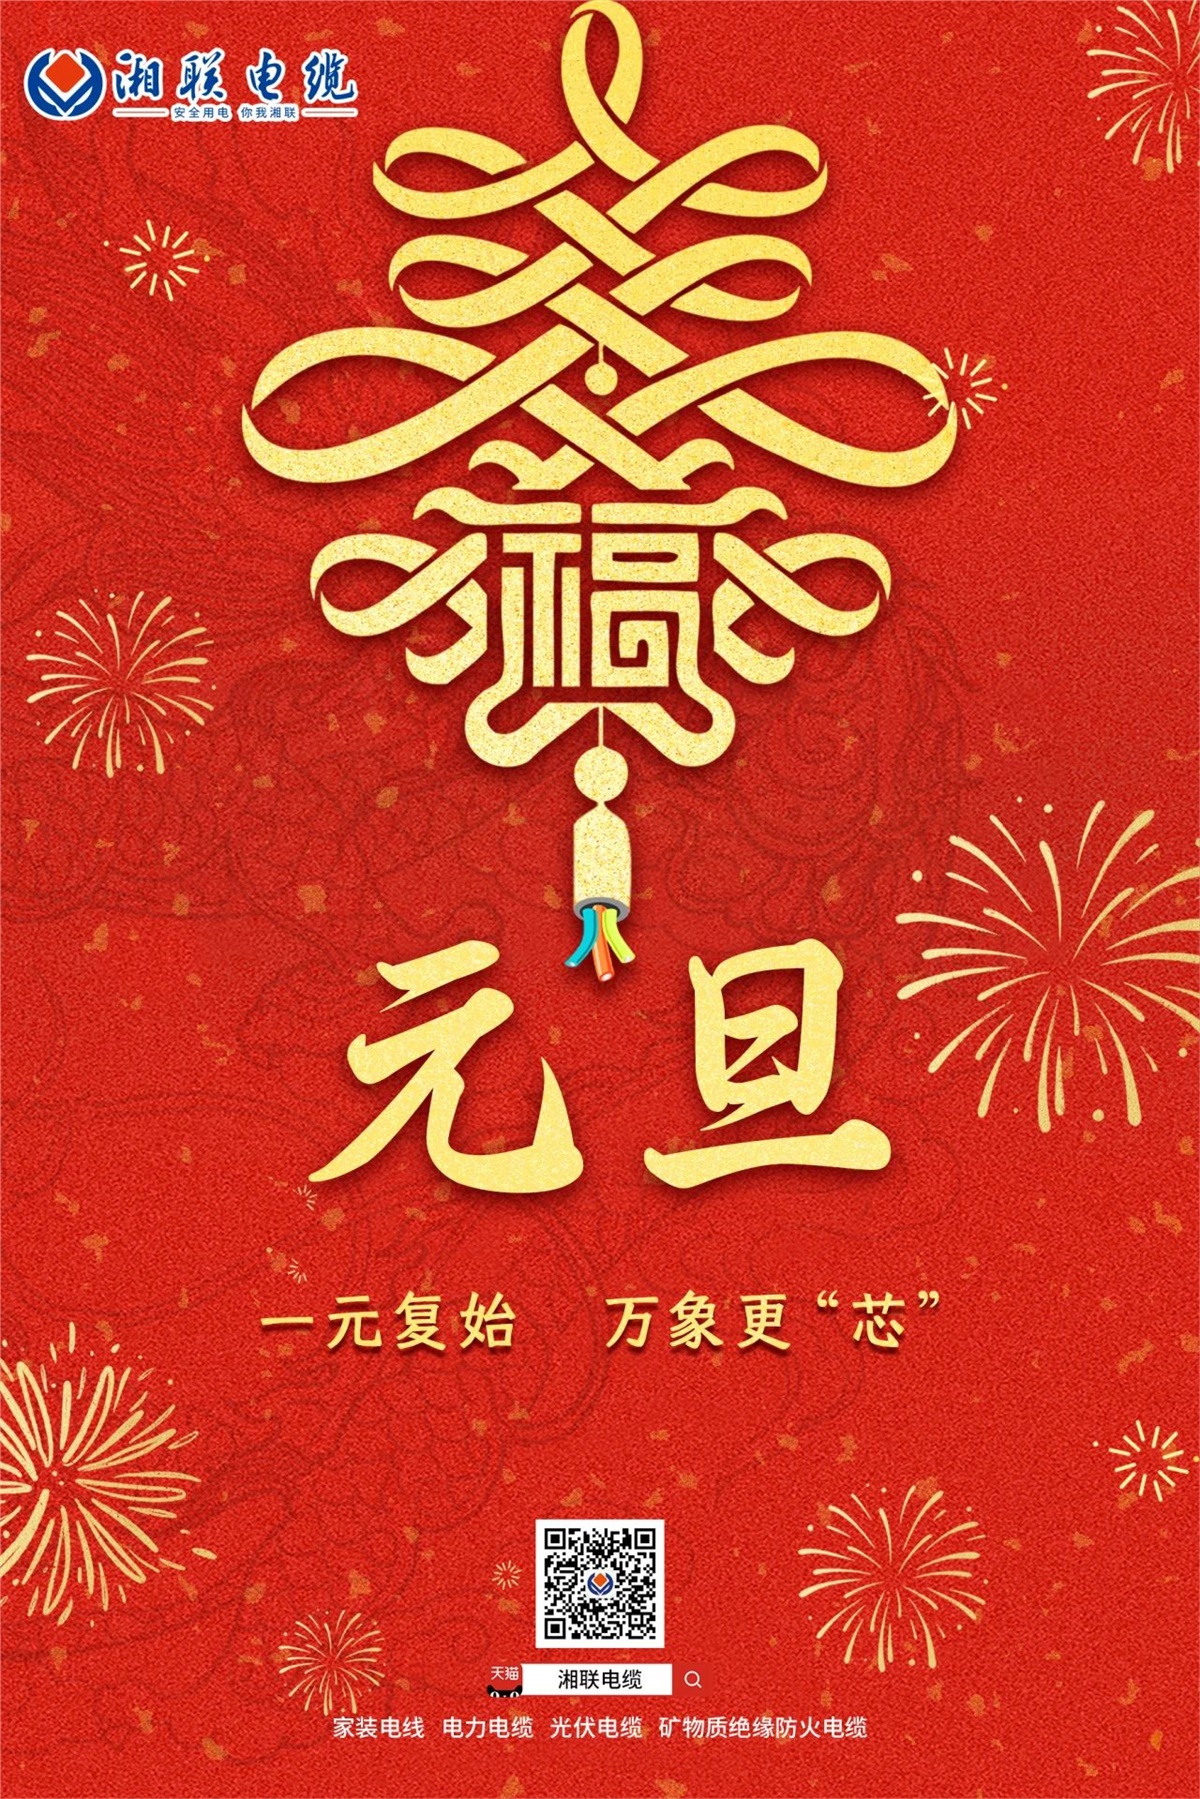 湘联电缆祝愿大家新年快乐，万事兴“龍”！#安全用电你我湘联